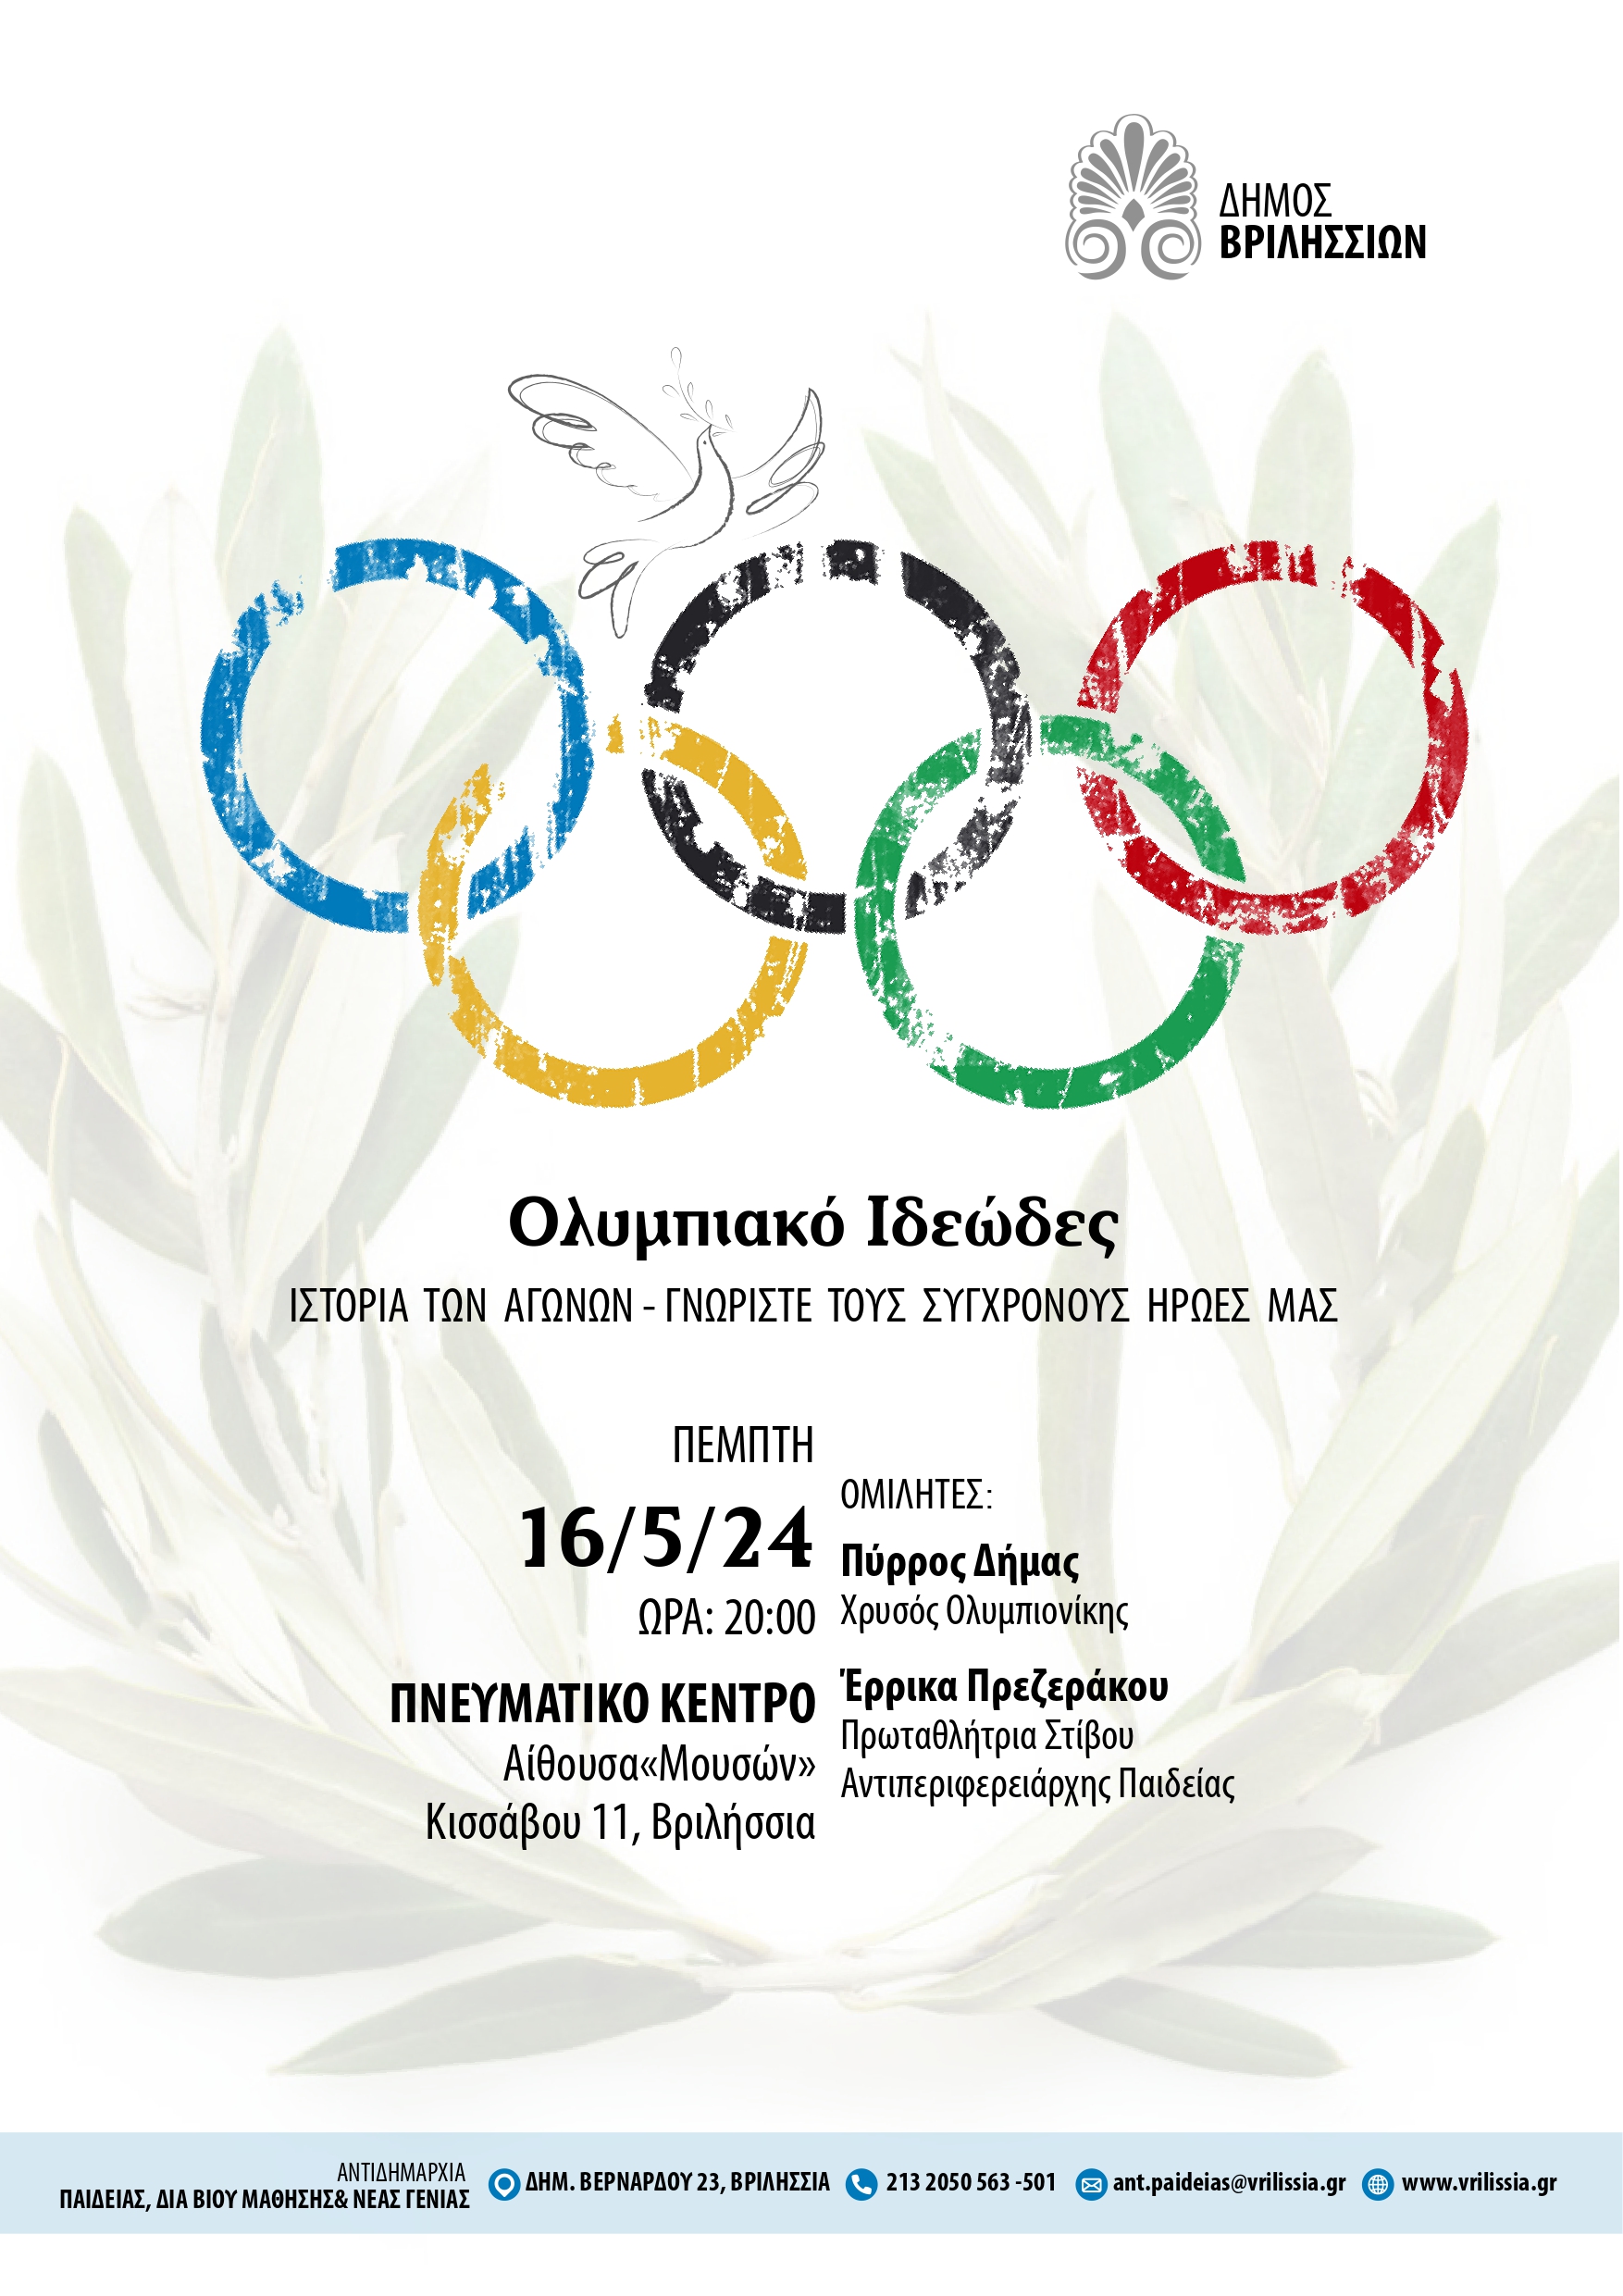 Ελεύθερο Πανεπιστήμιο: Το Ολυμπιακό Ιδεώδες και η Ιστορία των Αγώνων την Πέμπτη 16/5 στο Πνευματικό Κέντρο   